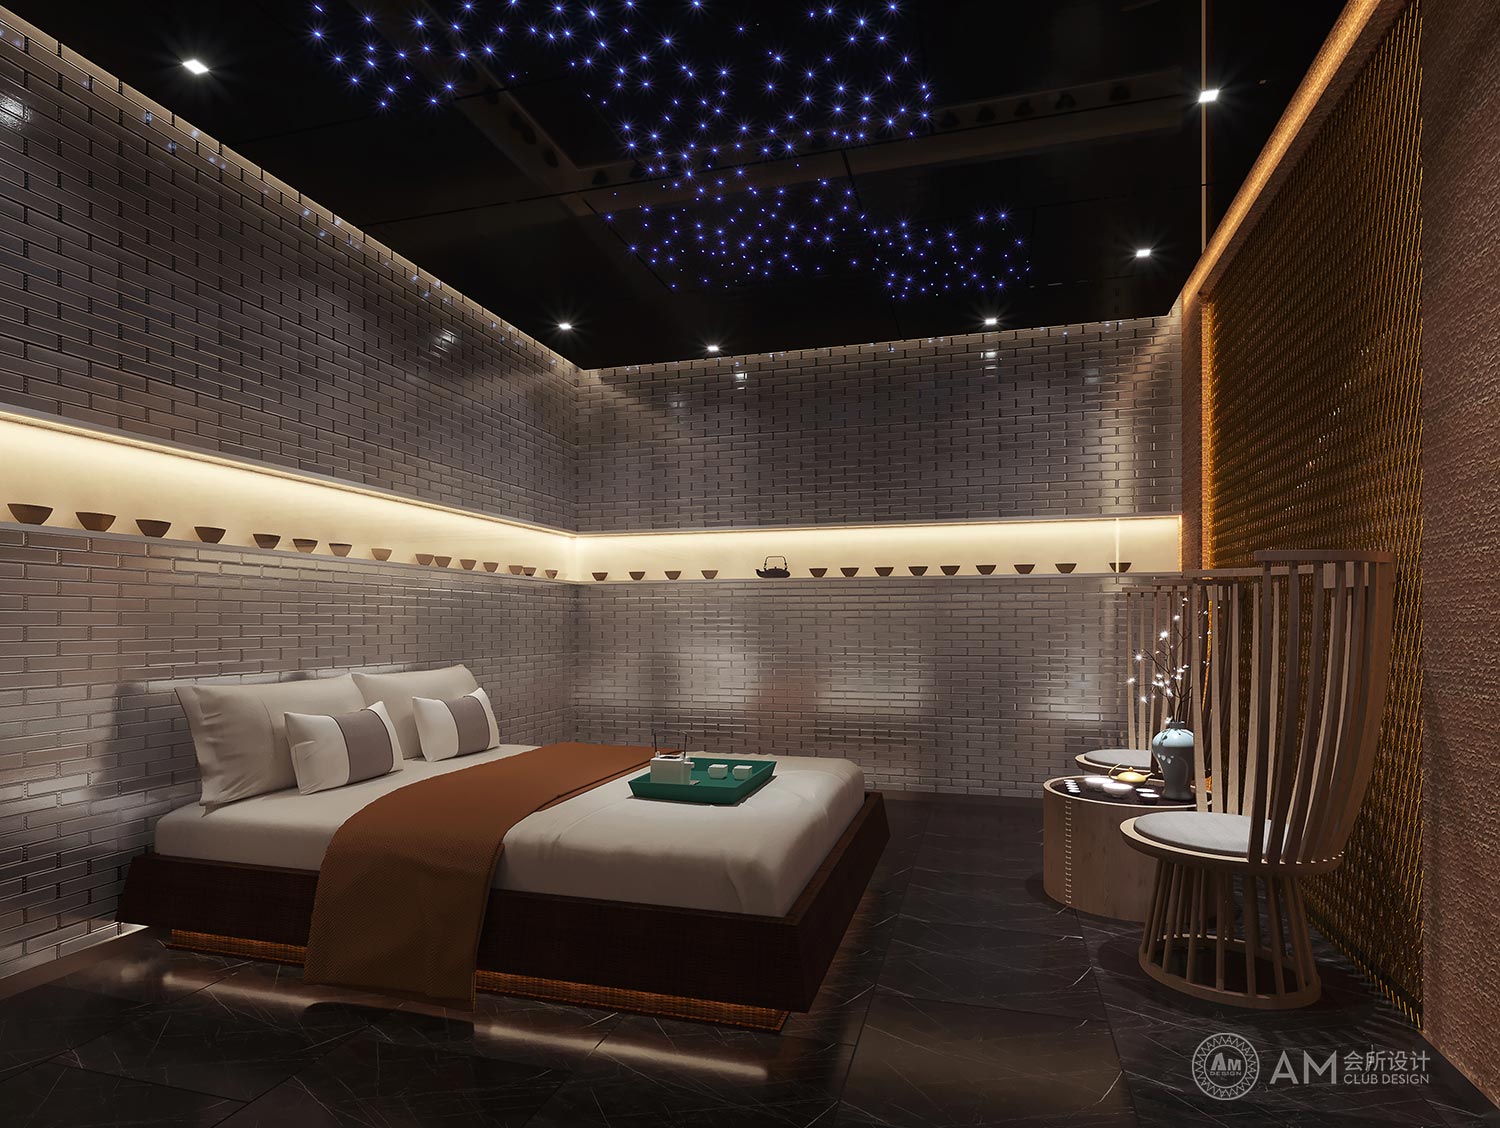 AM DESIGN | Spa room design of Top Spa Club in Joy City